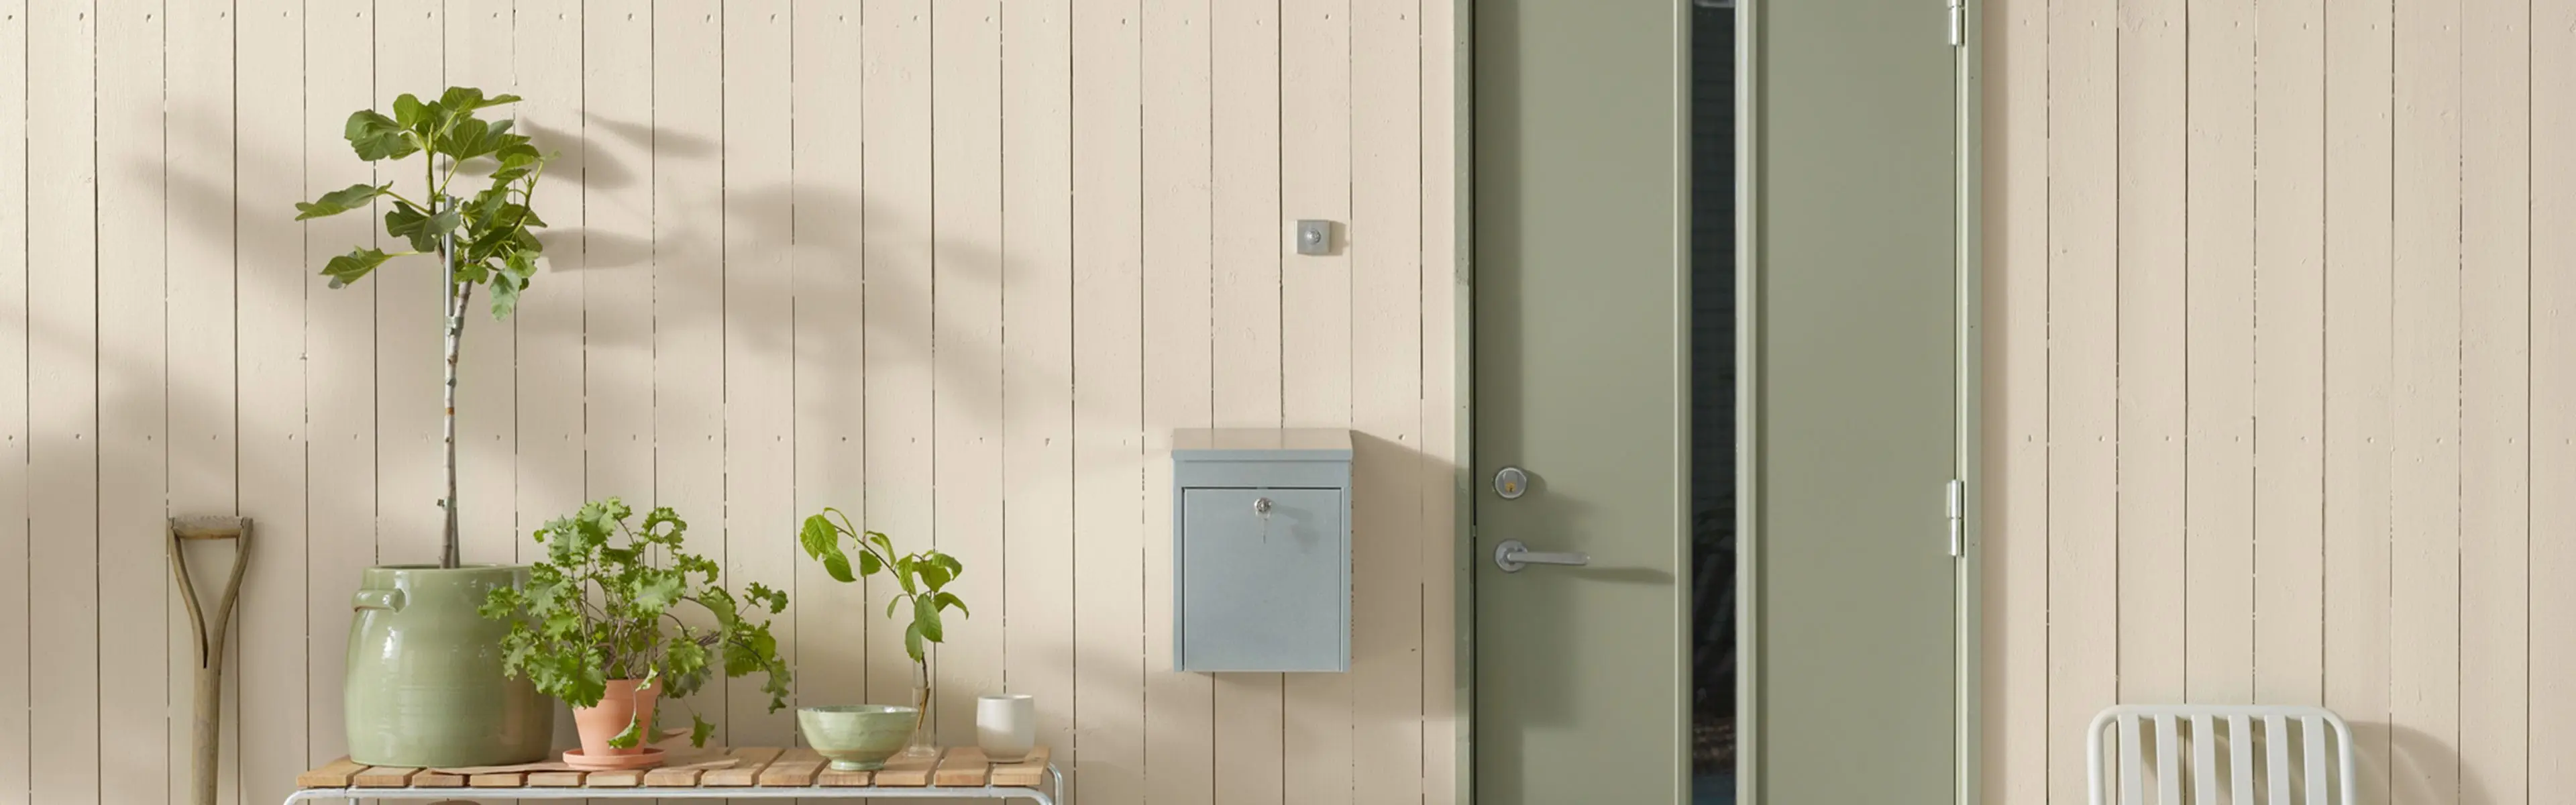 Lysmalt husvegg med plantebenk, postkasse og lysegrønn inngangsdør.